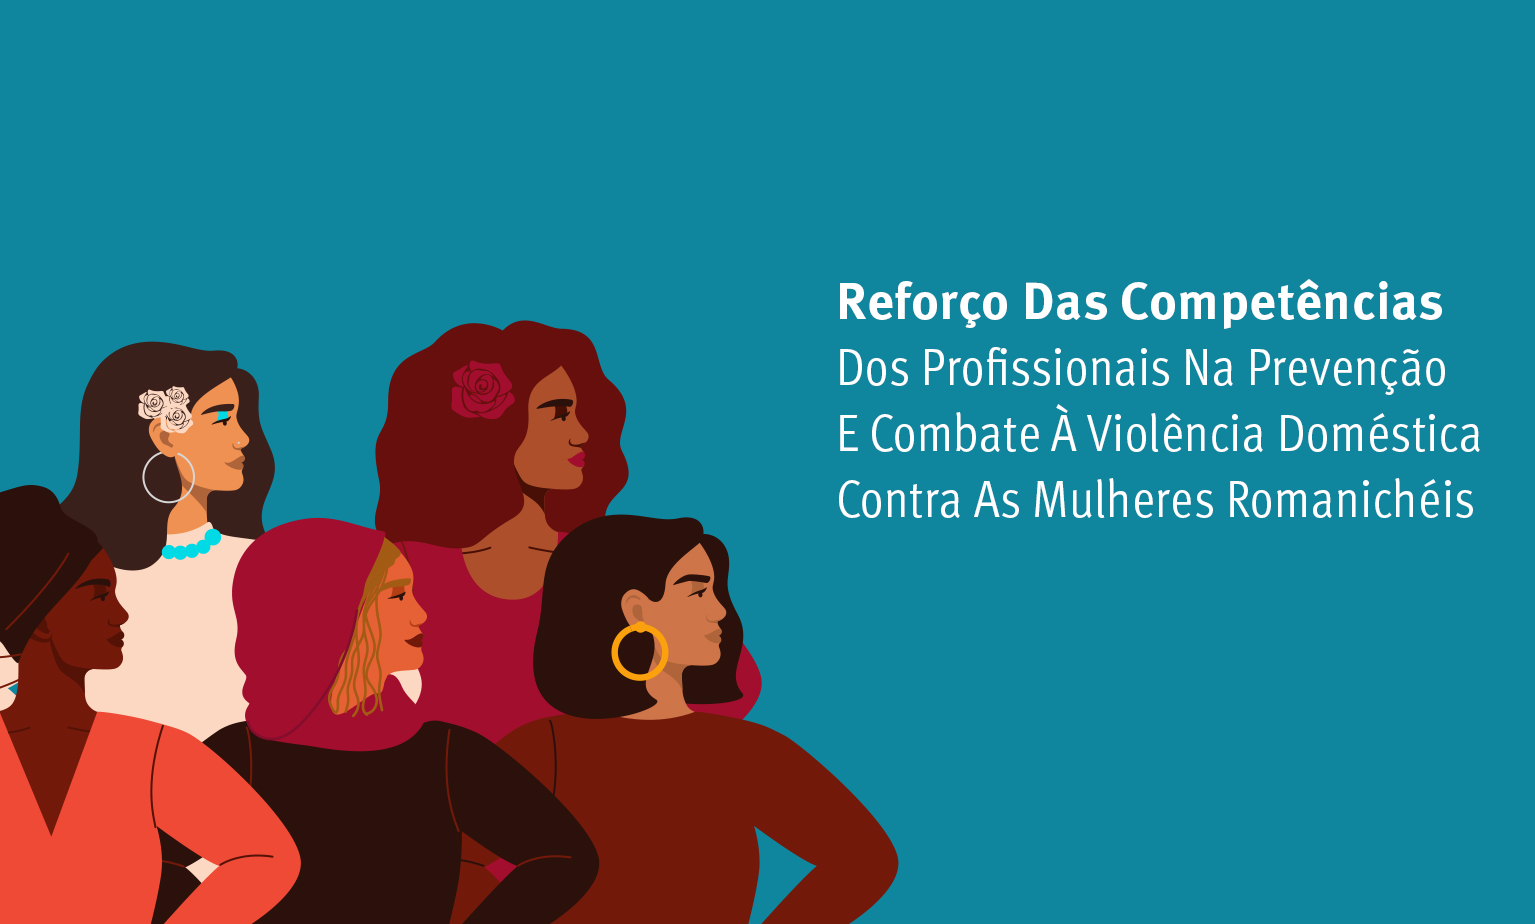 Reforço das competências dos profissionais na prevenção e combate à violência doméstica contra as mulheres romanichéis